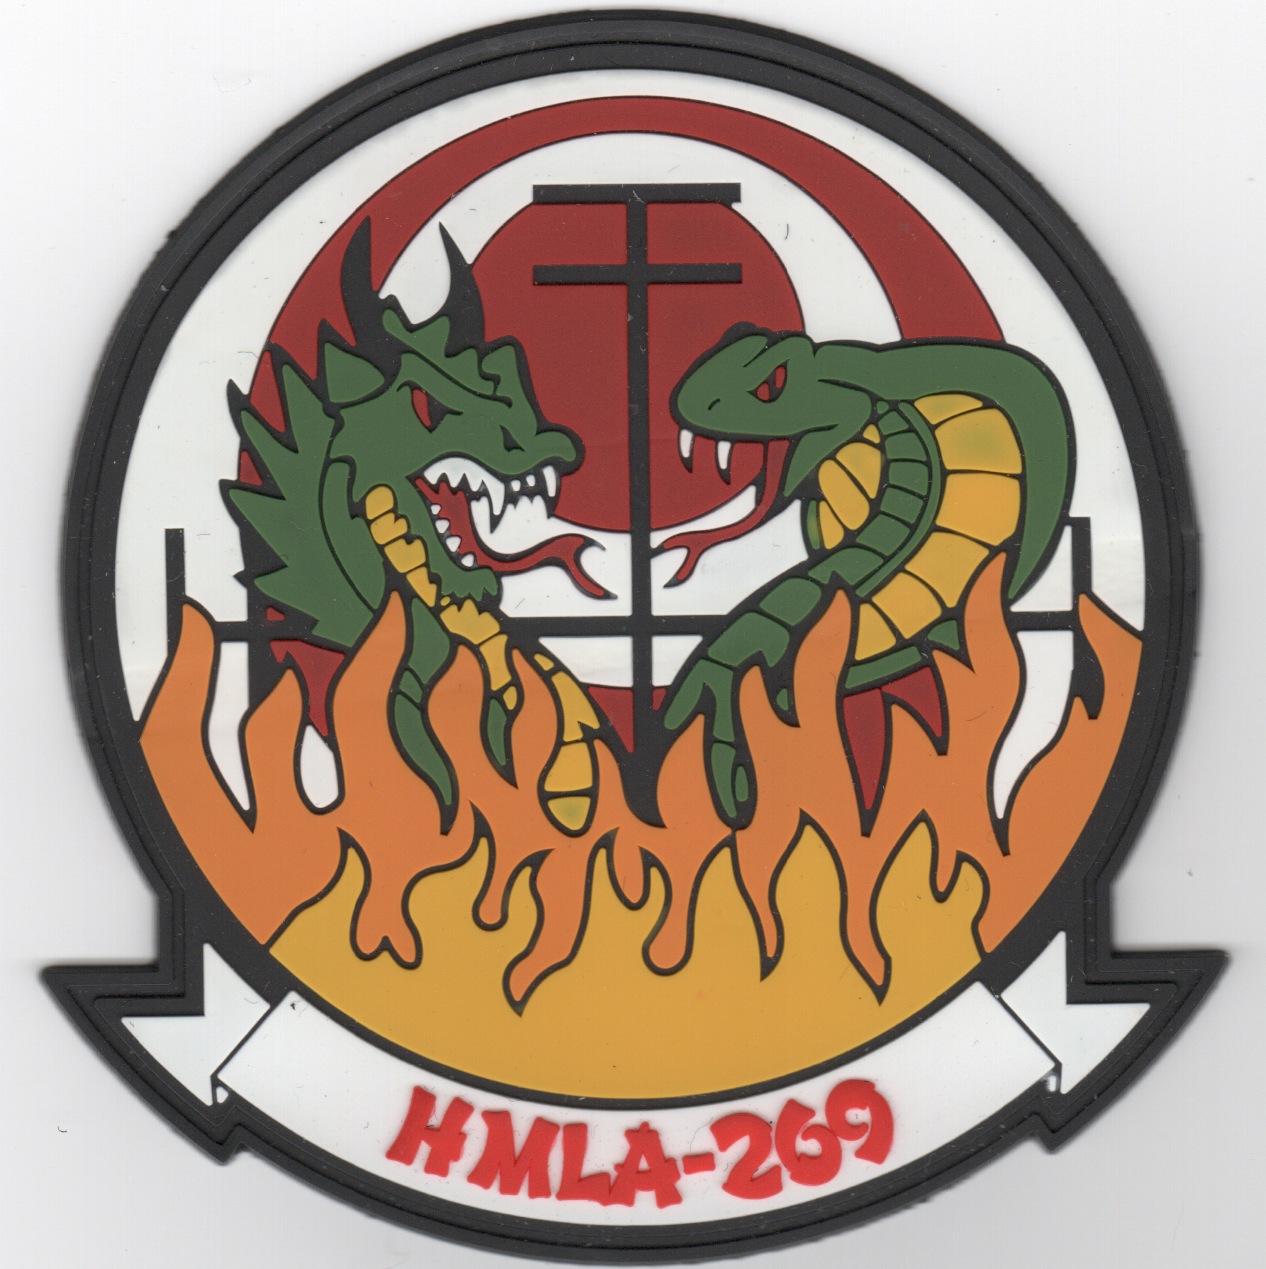 HMLA-269 Squadron Patch (2 Dragons/PVC)